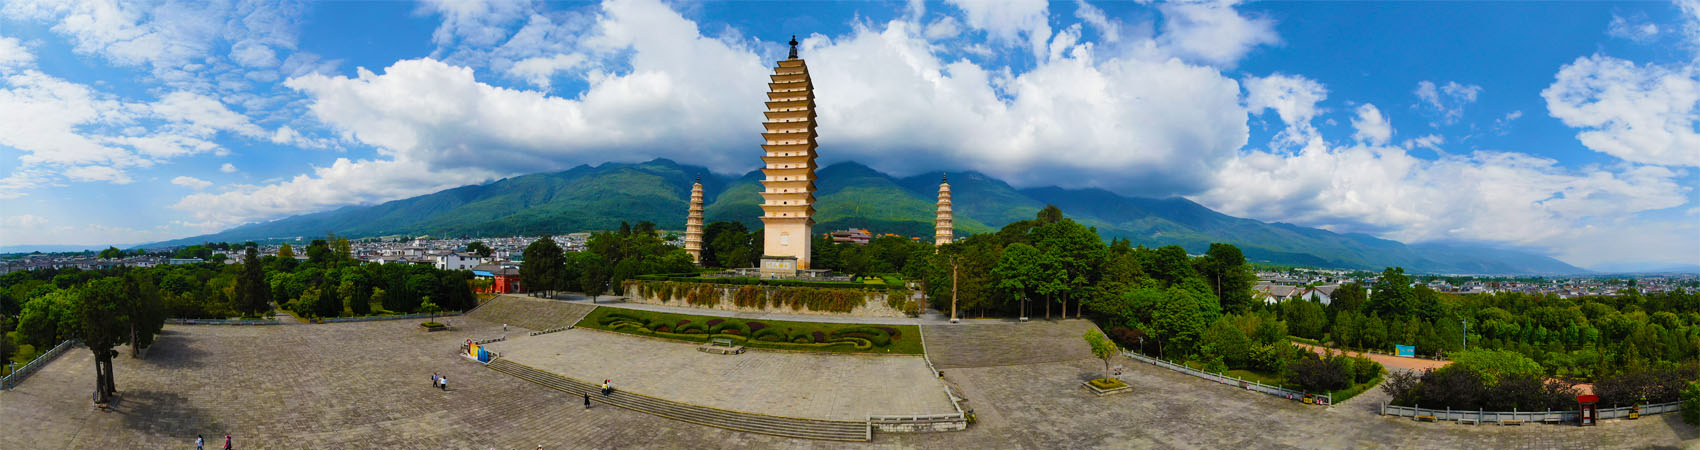 Die Drei Pagoden bei Dali, Yunnan